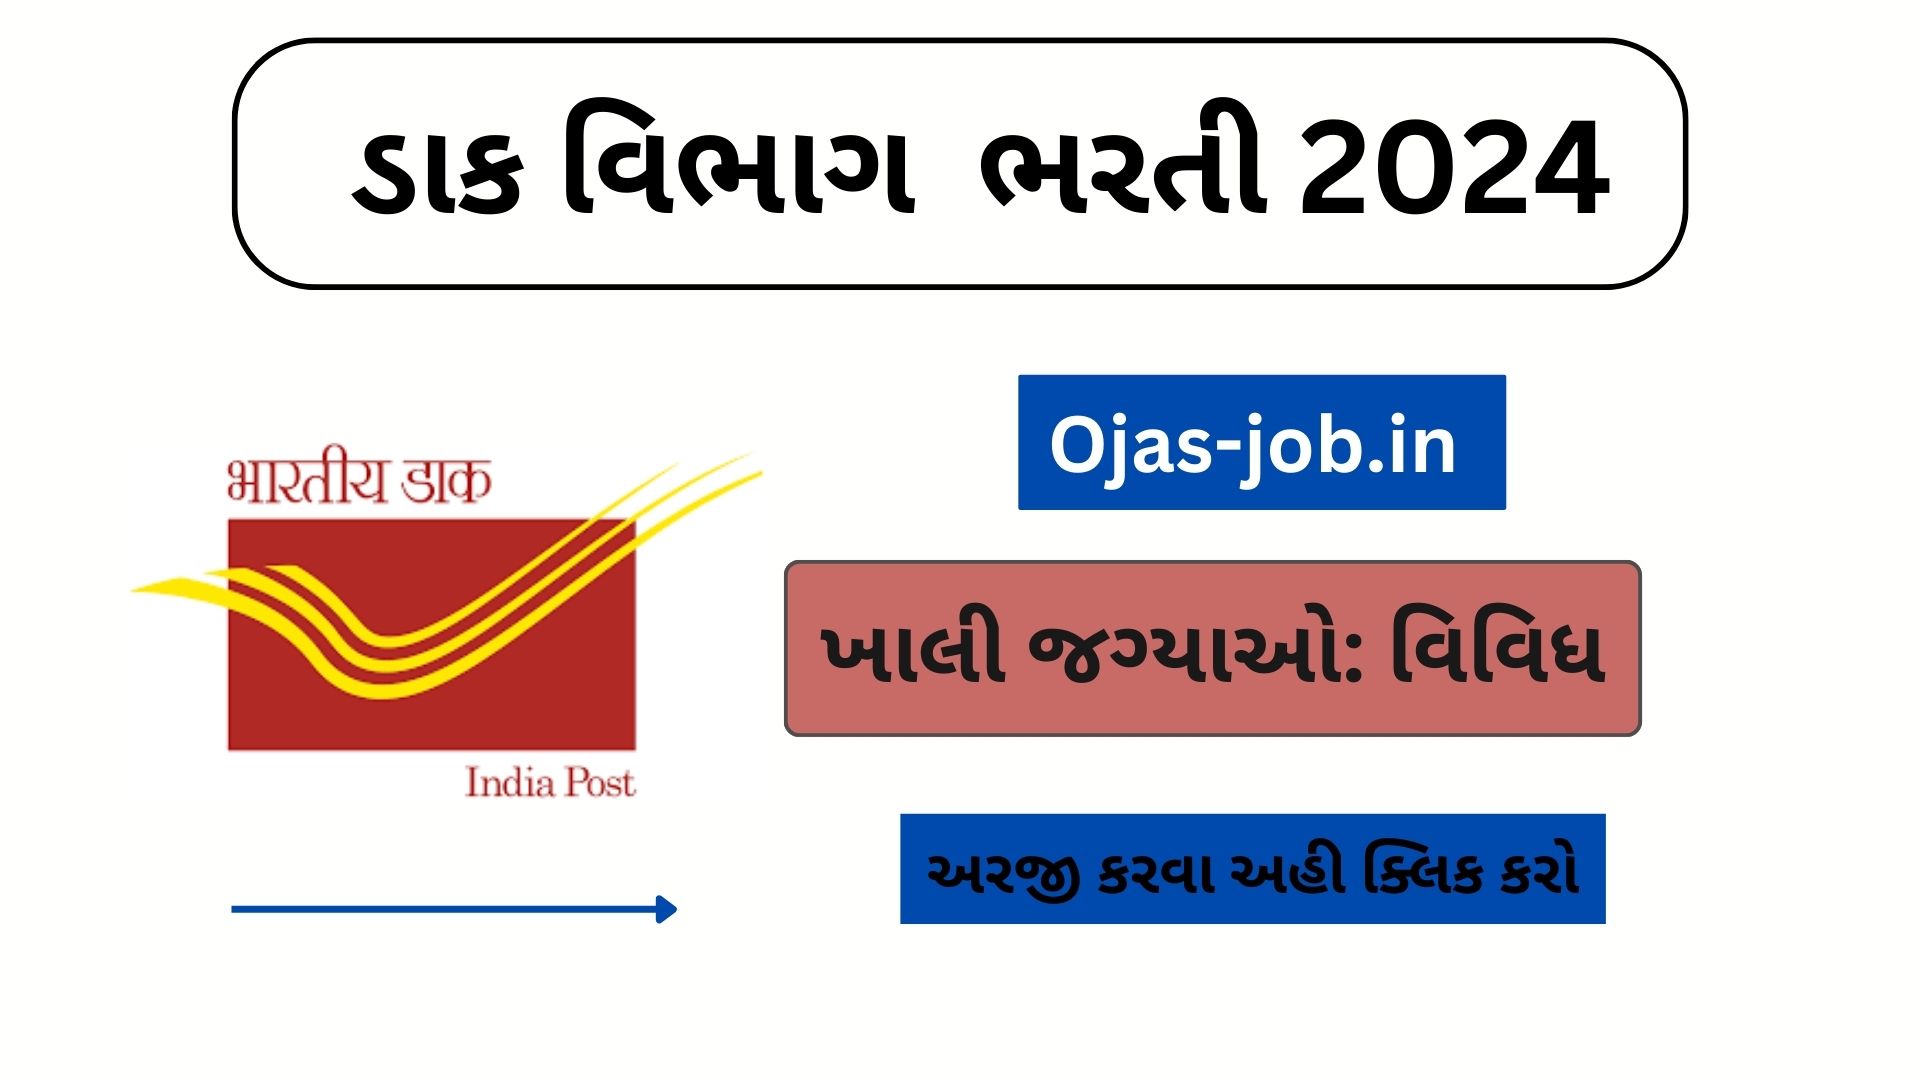 India Post Recruitment 2024